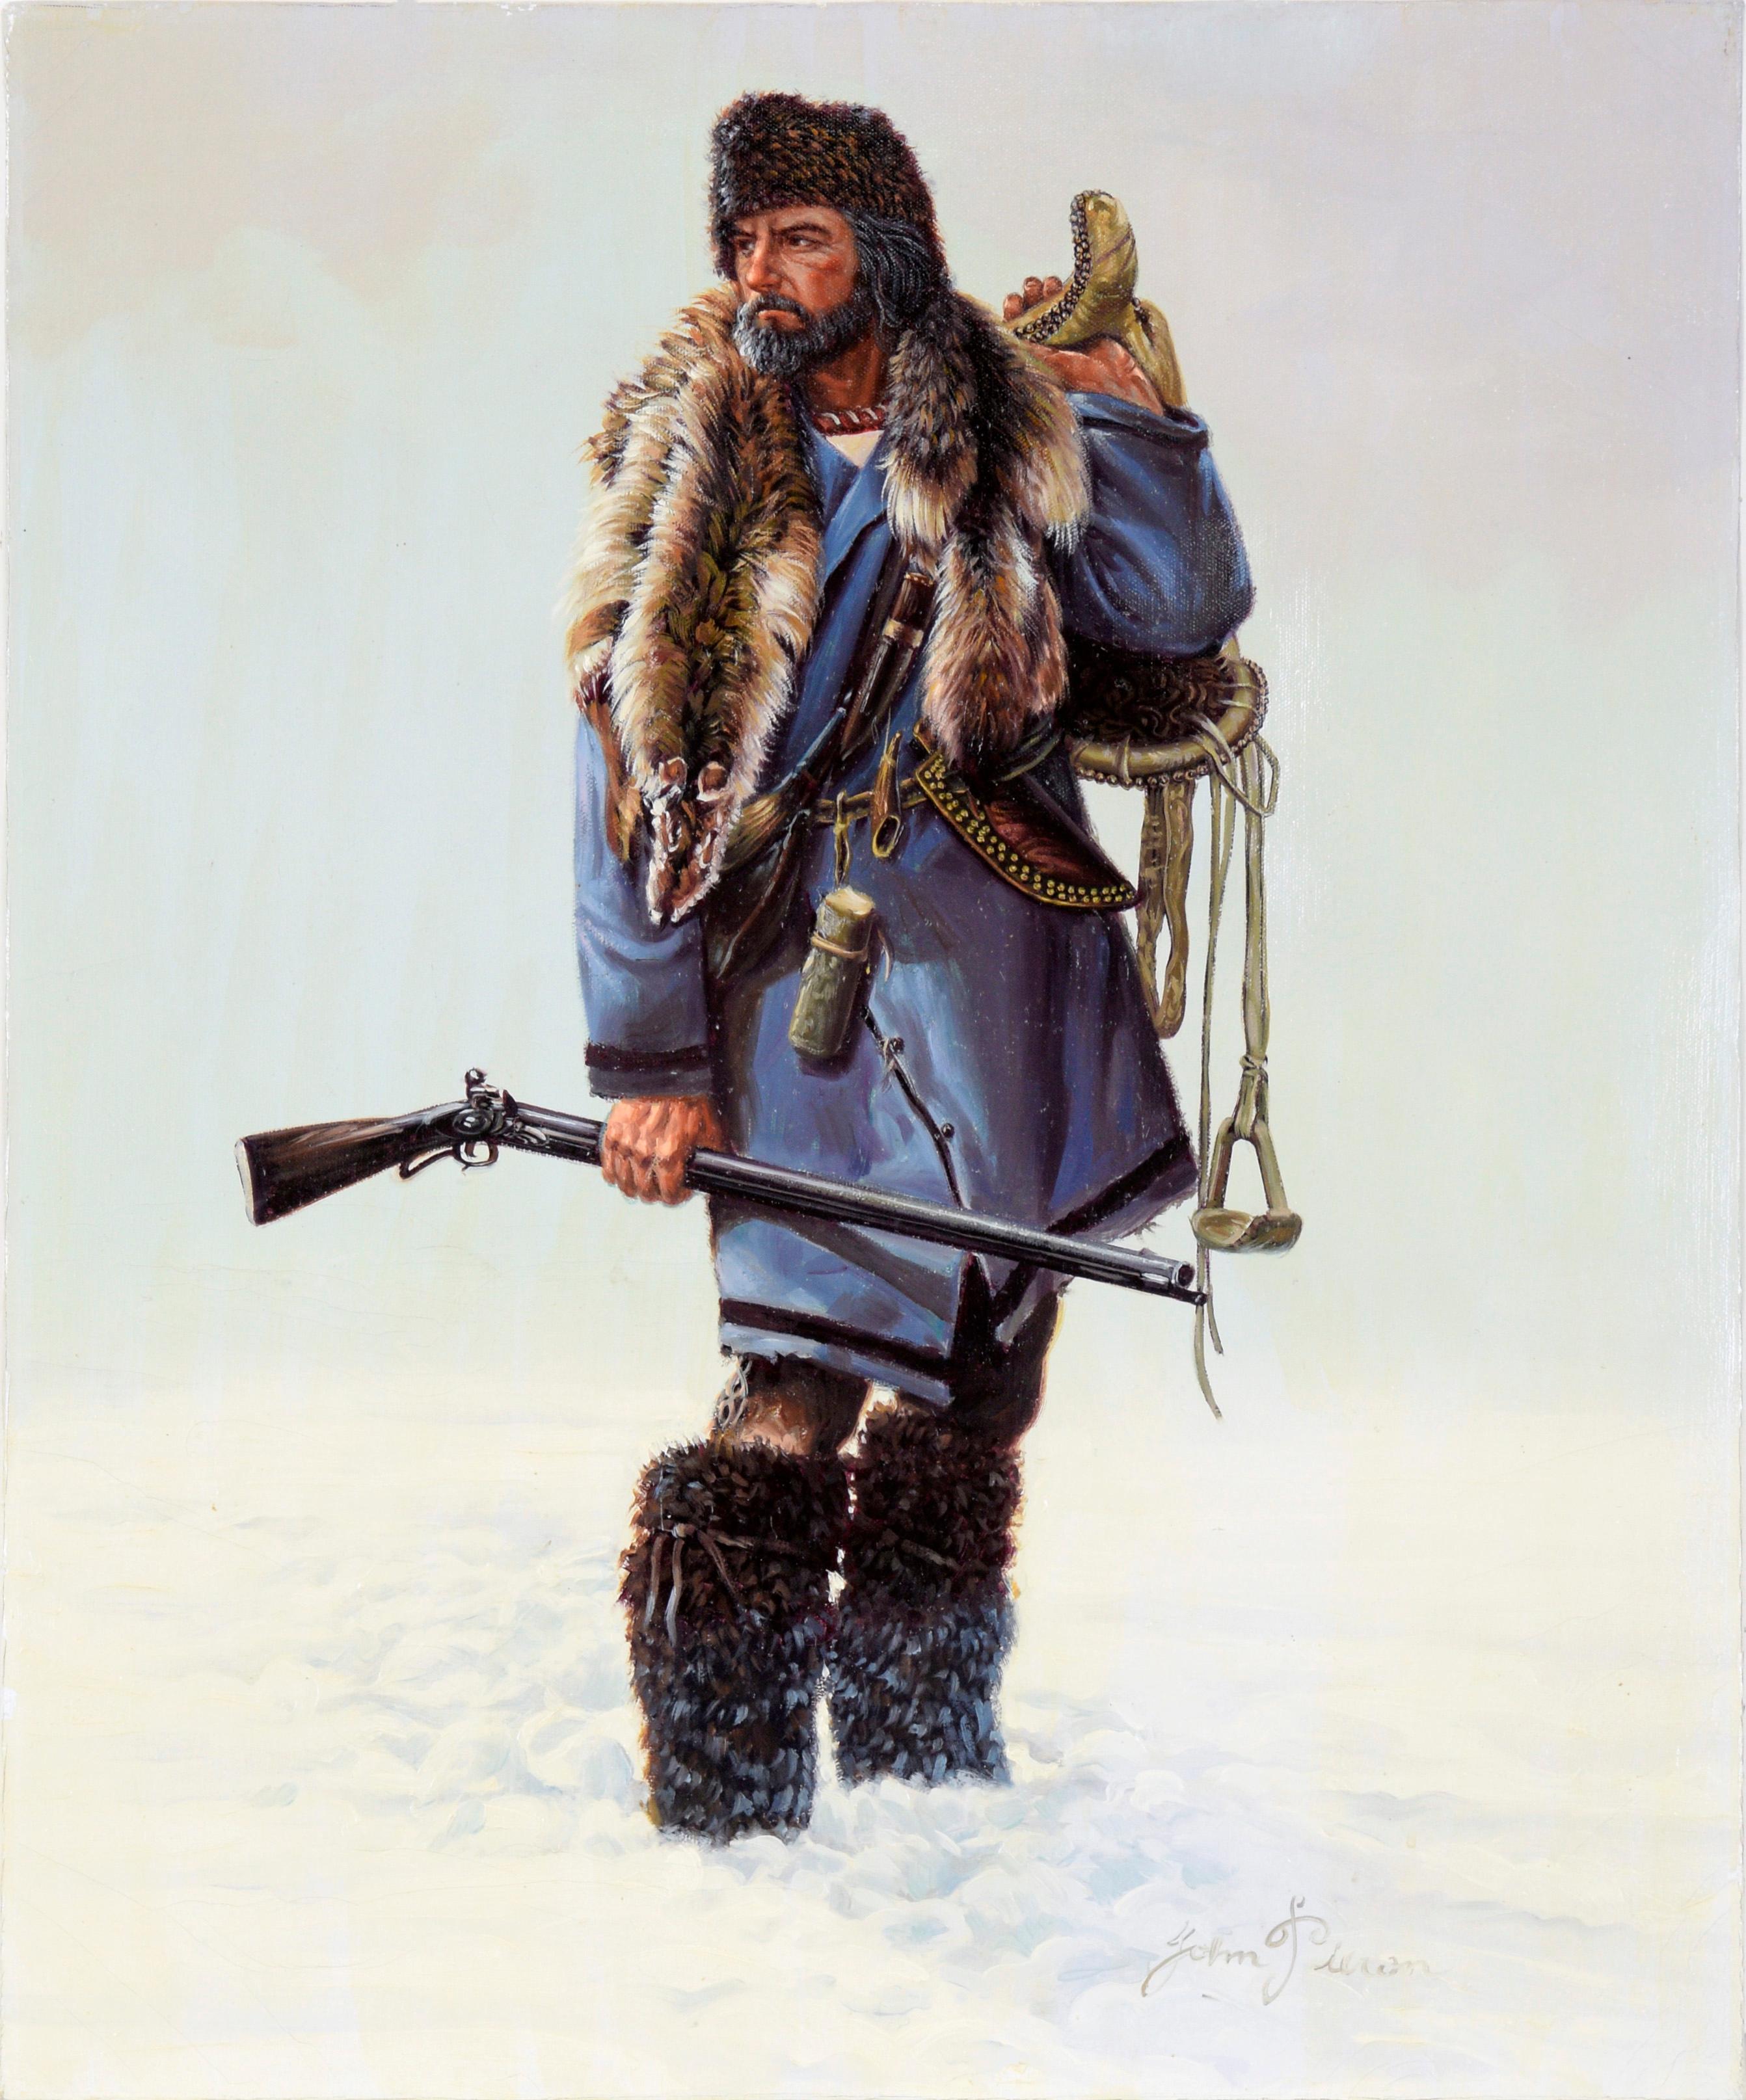 John Pieron Portrait Painting - Fur Trapper in Winter - Portrait in Oil on Canvas